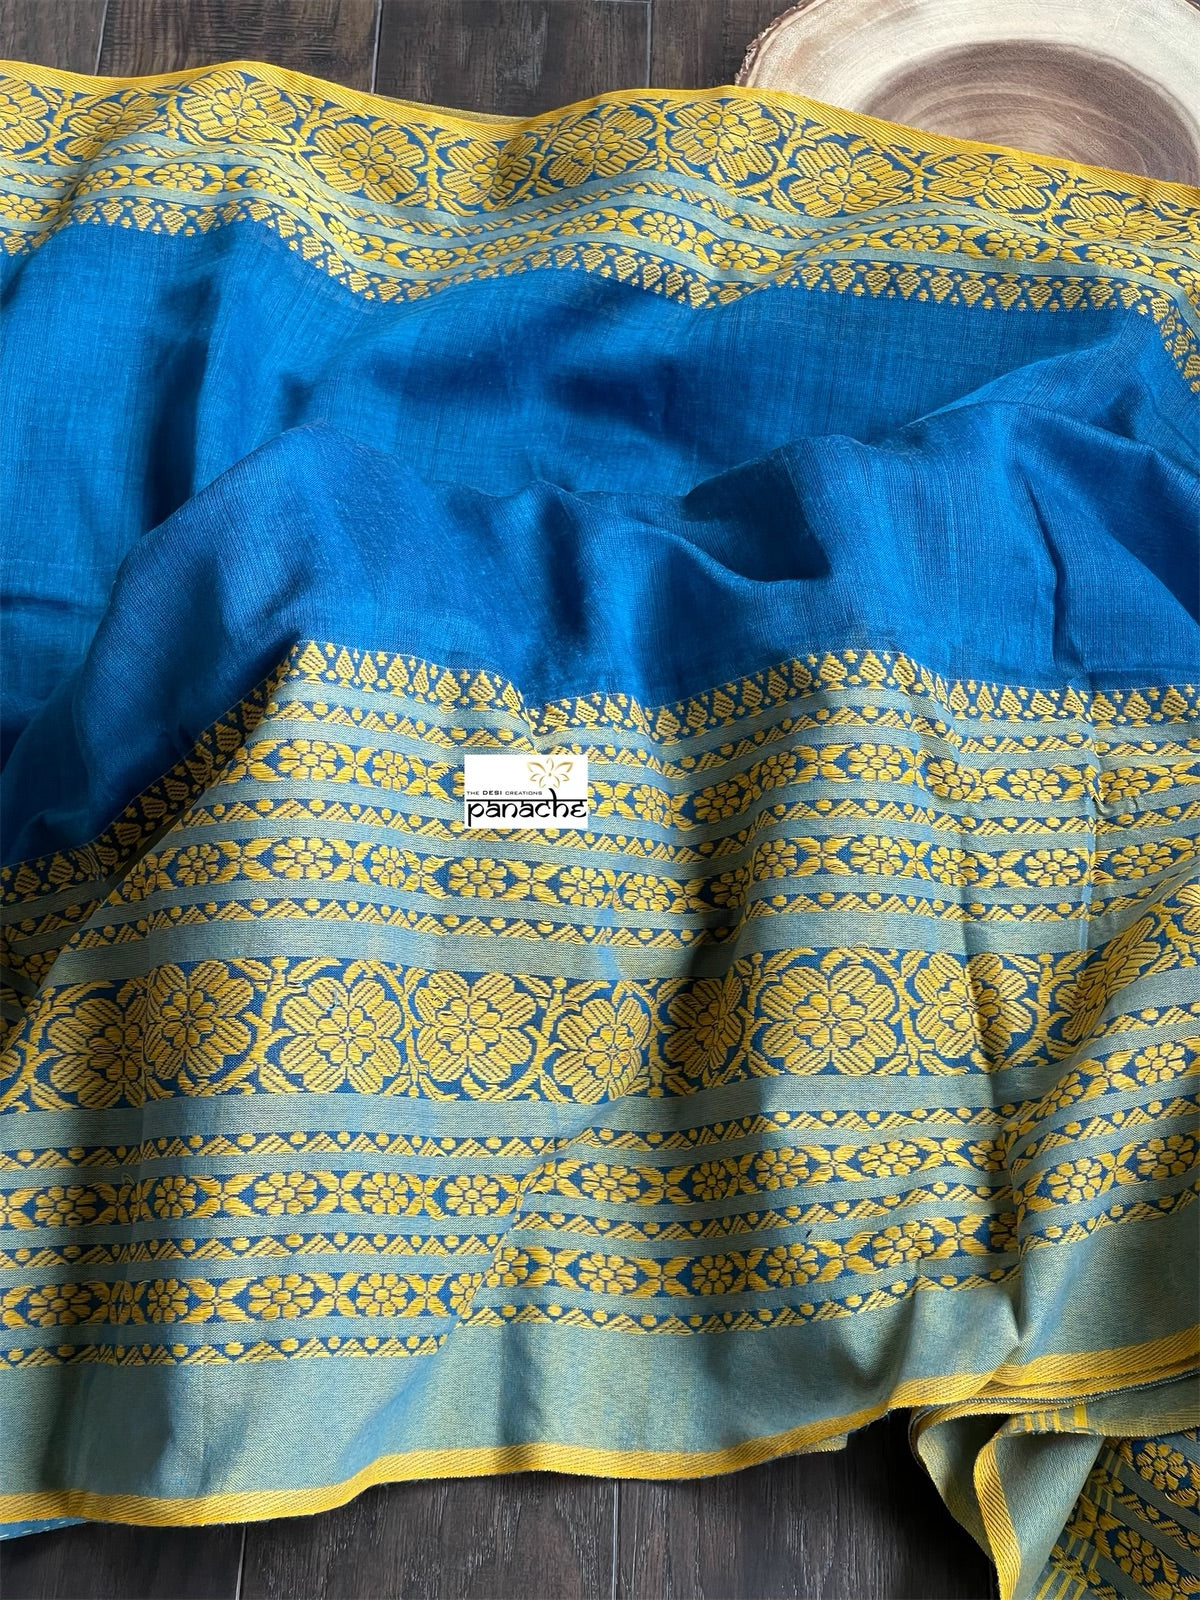 Begampuri Cotton Saree - Blue Yellow Woven